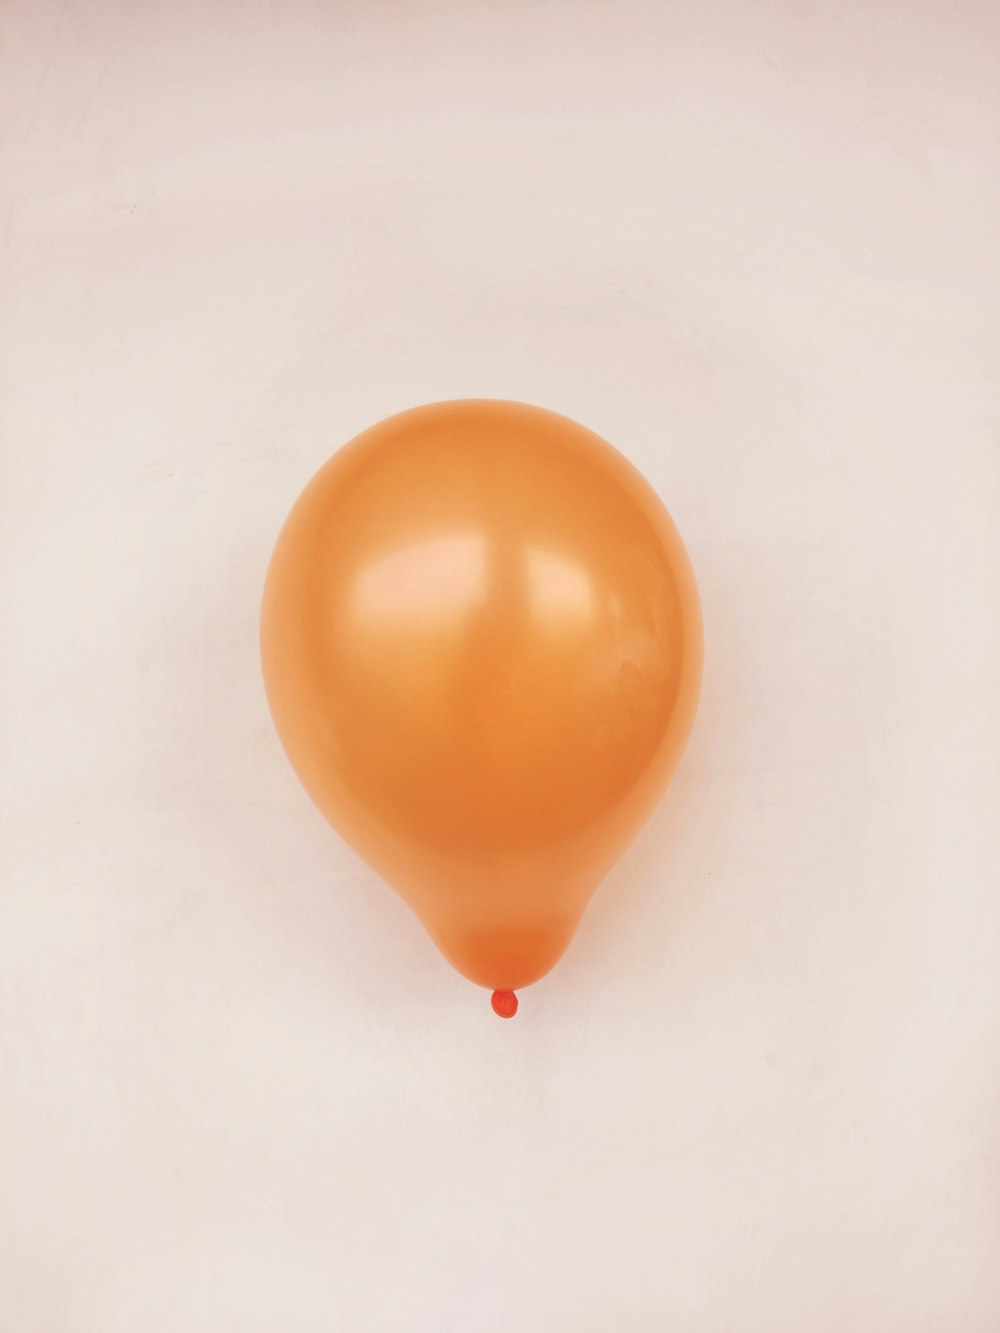 ballon orange sur une surface blanche